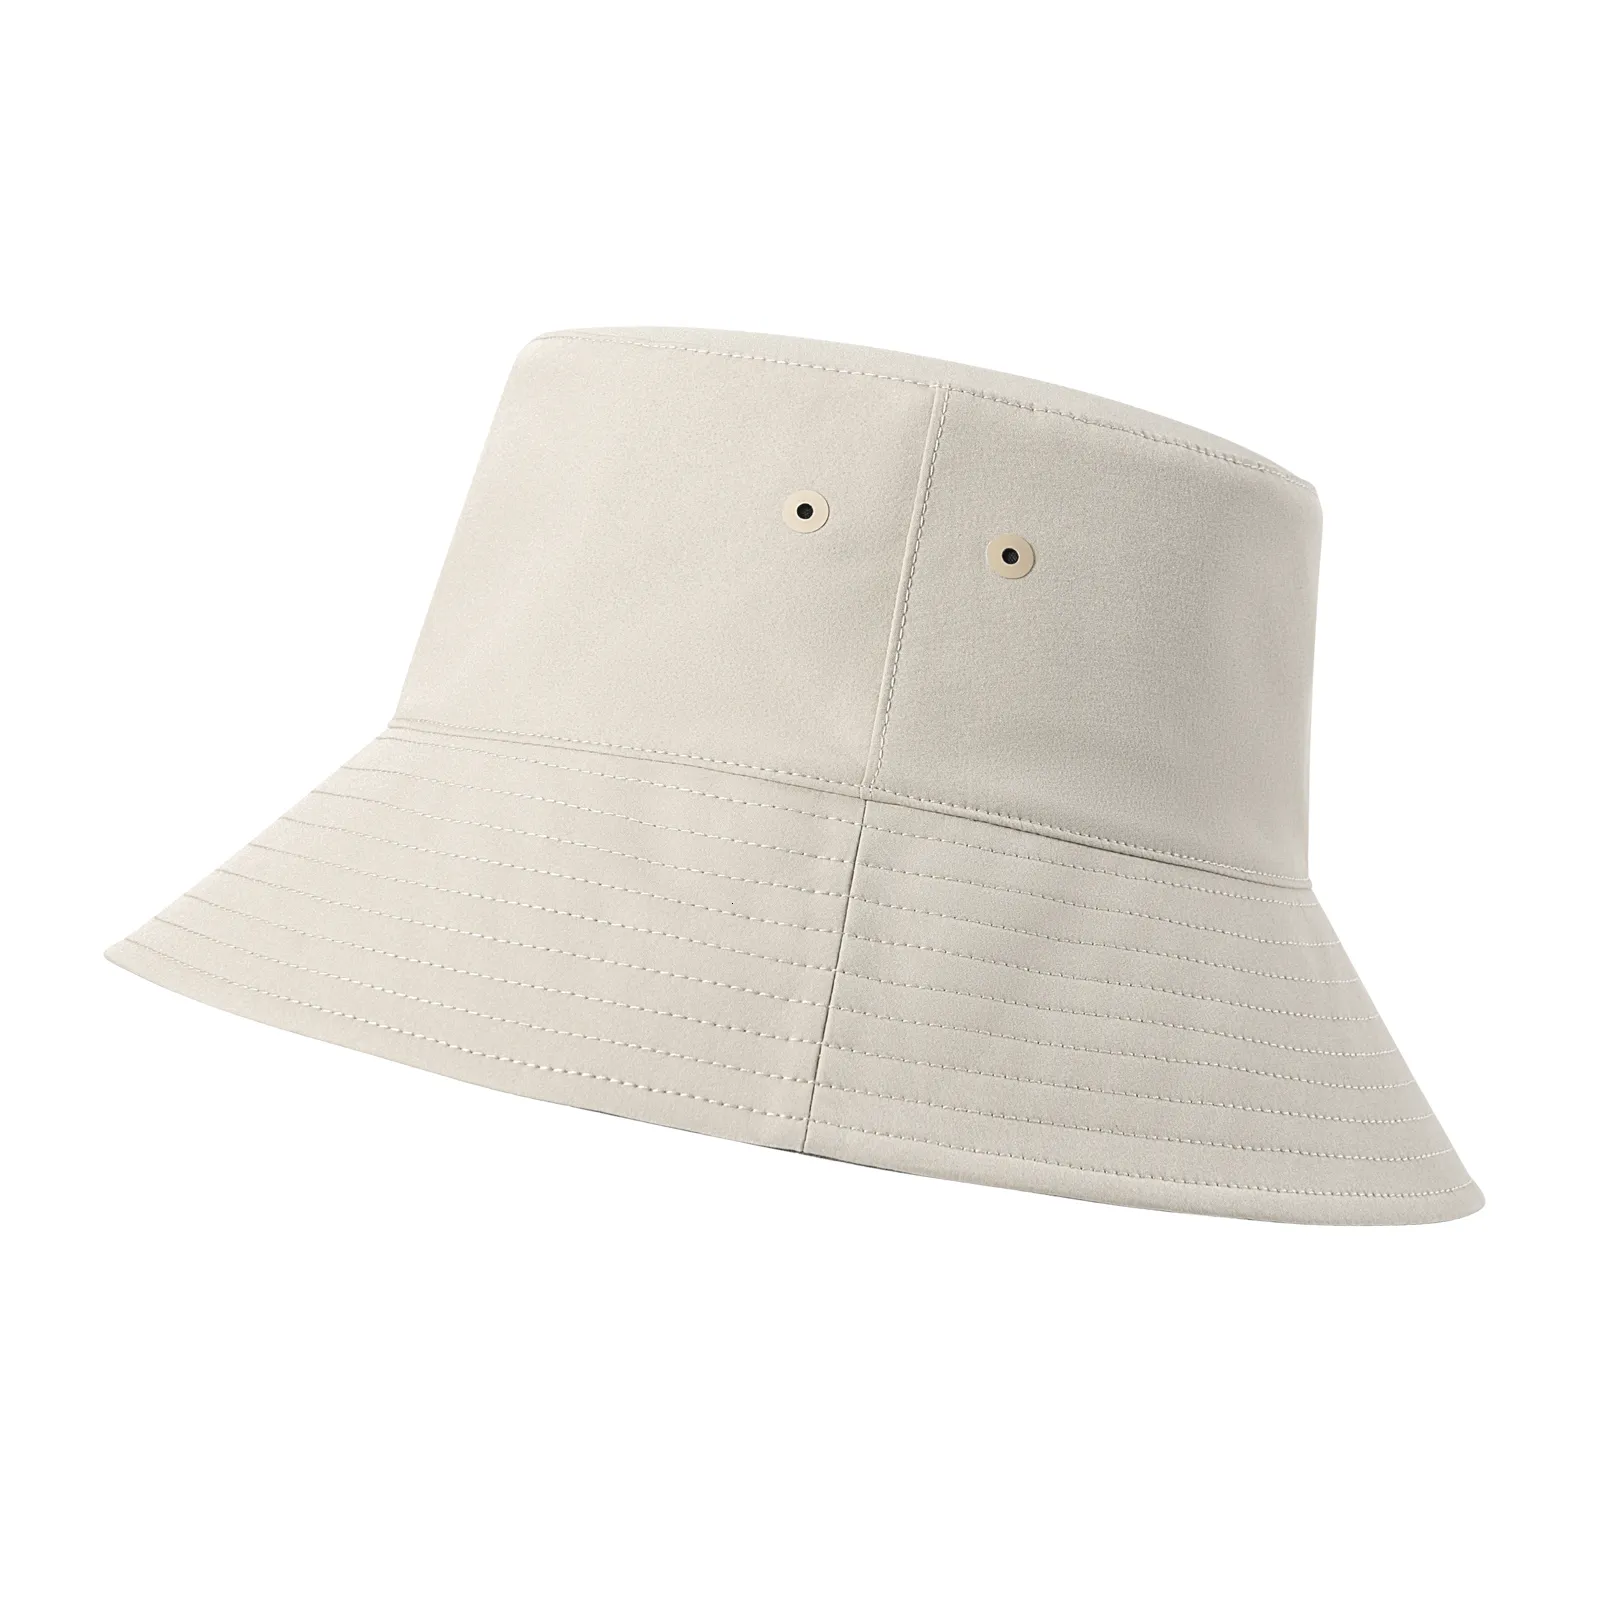 Weitkrempeln Hats Bucket Voboom Unisex Outdoor Packbare Sonnenkappe reversibler Reisehut für Männer Frauen Teenager Mädchen 230823